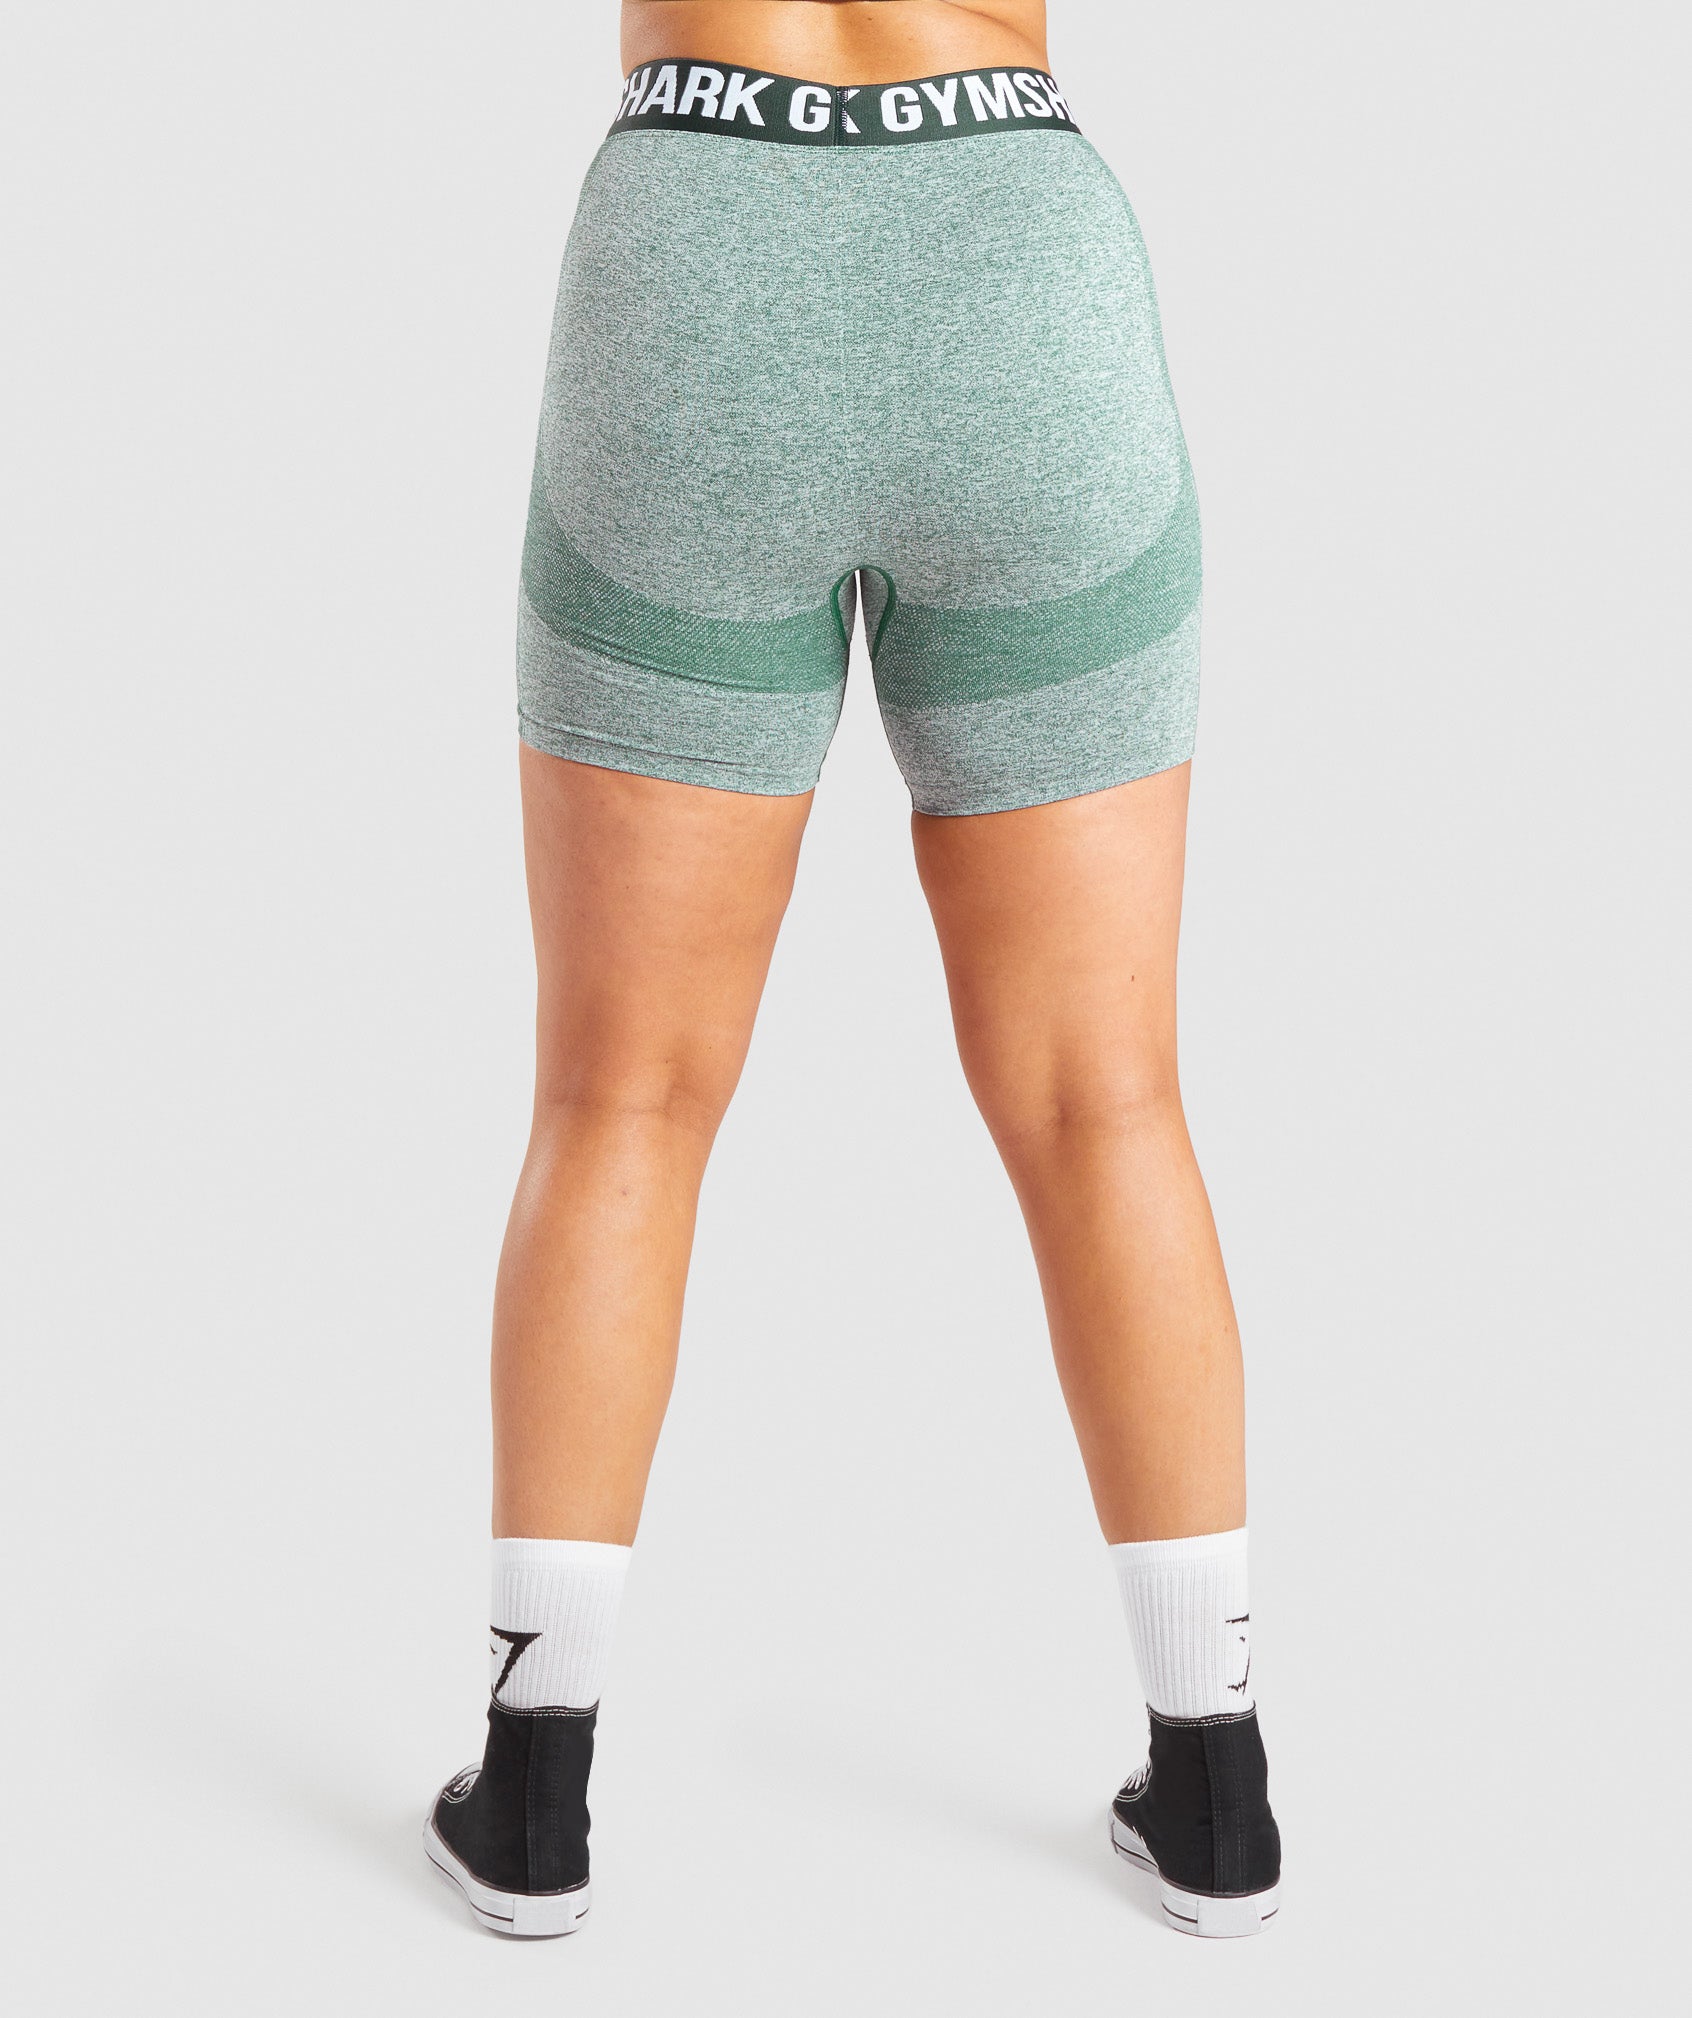 Gymshark Flex Shorts - Charcoal Marl/Light Green